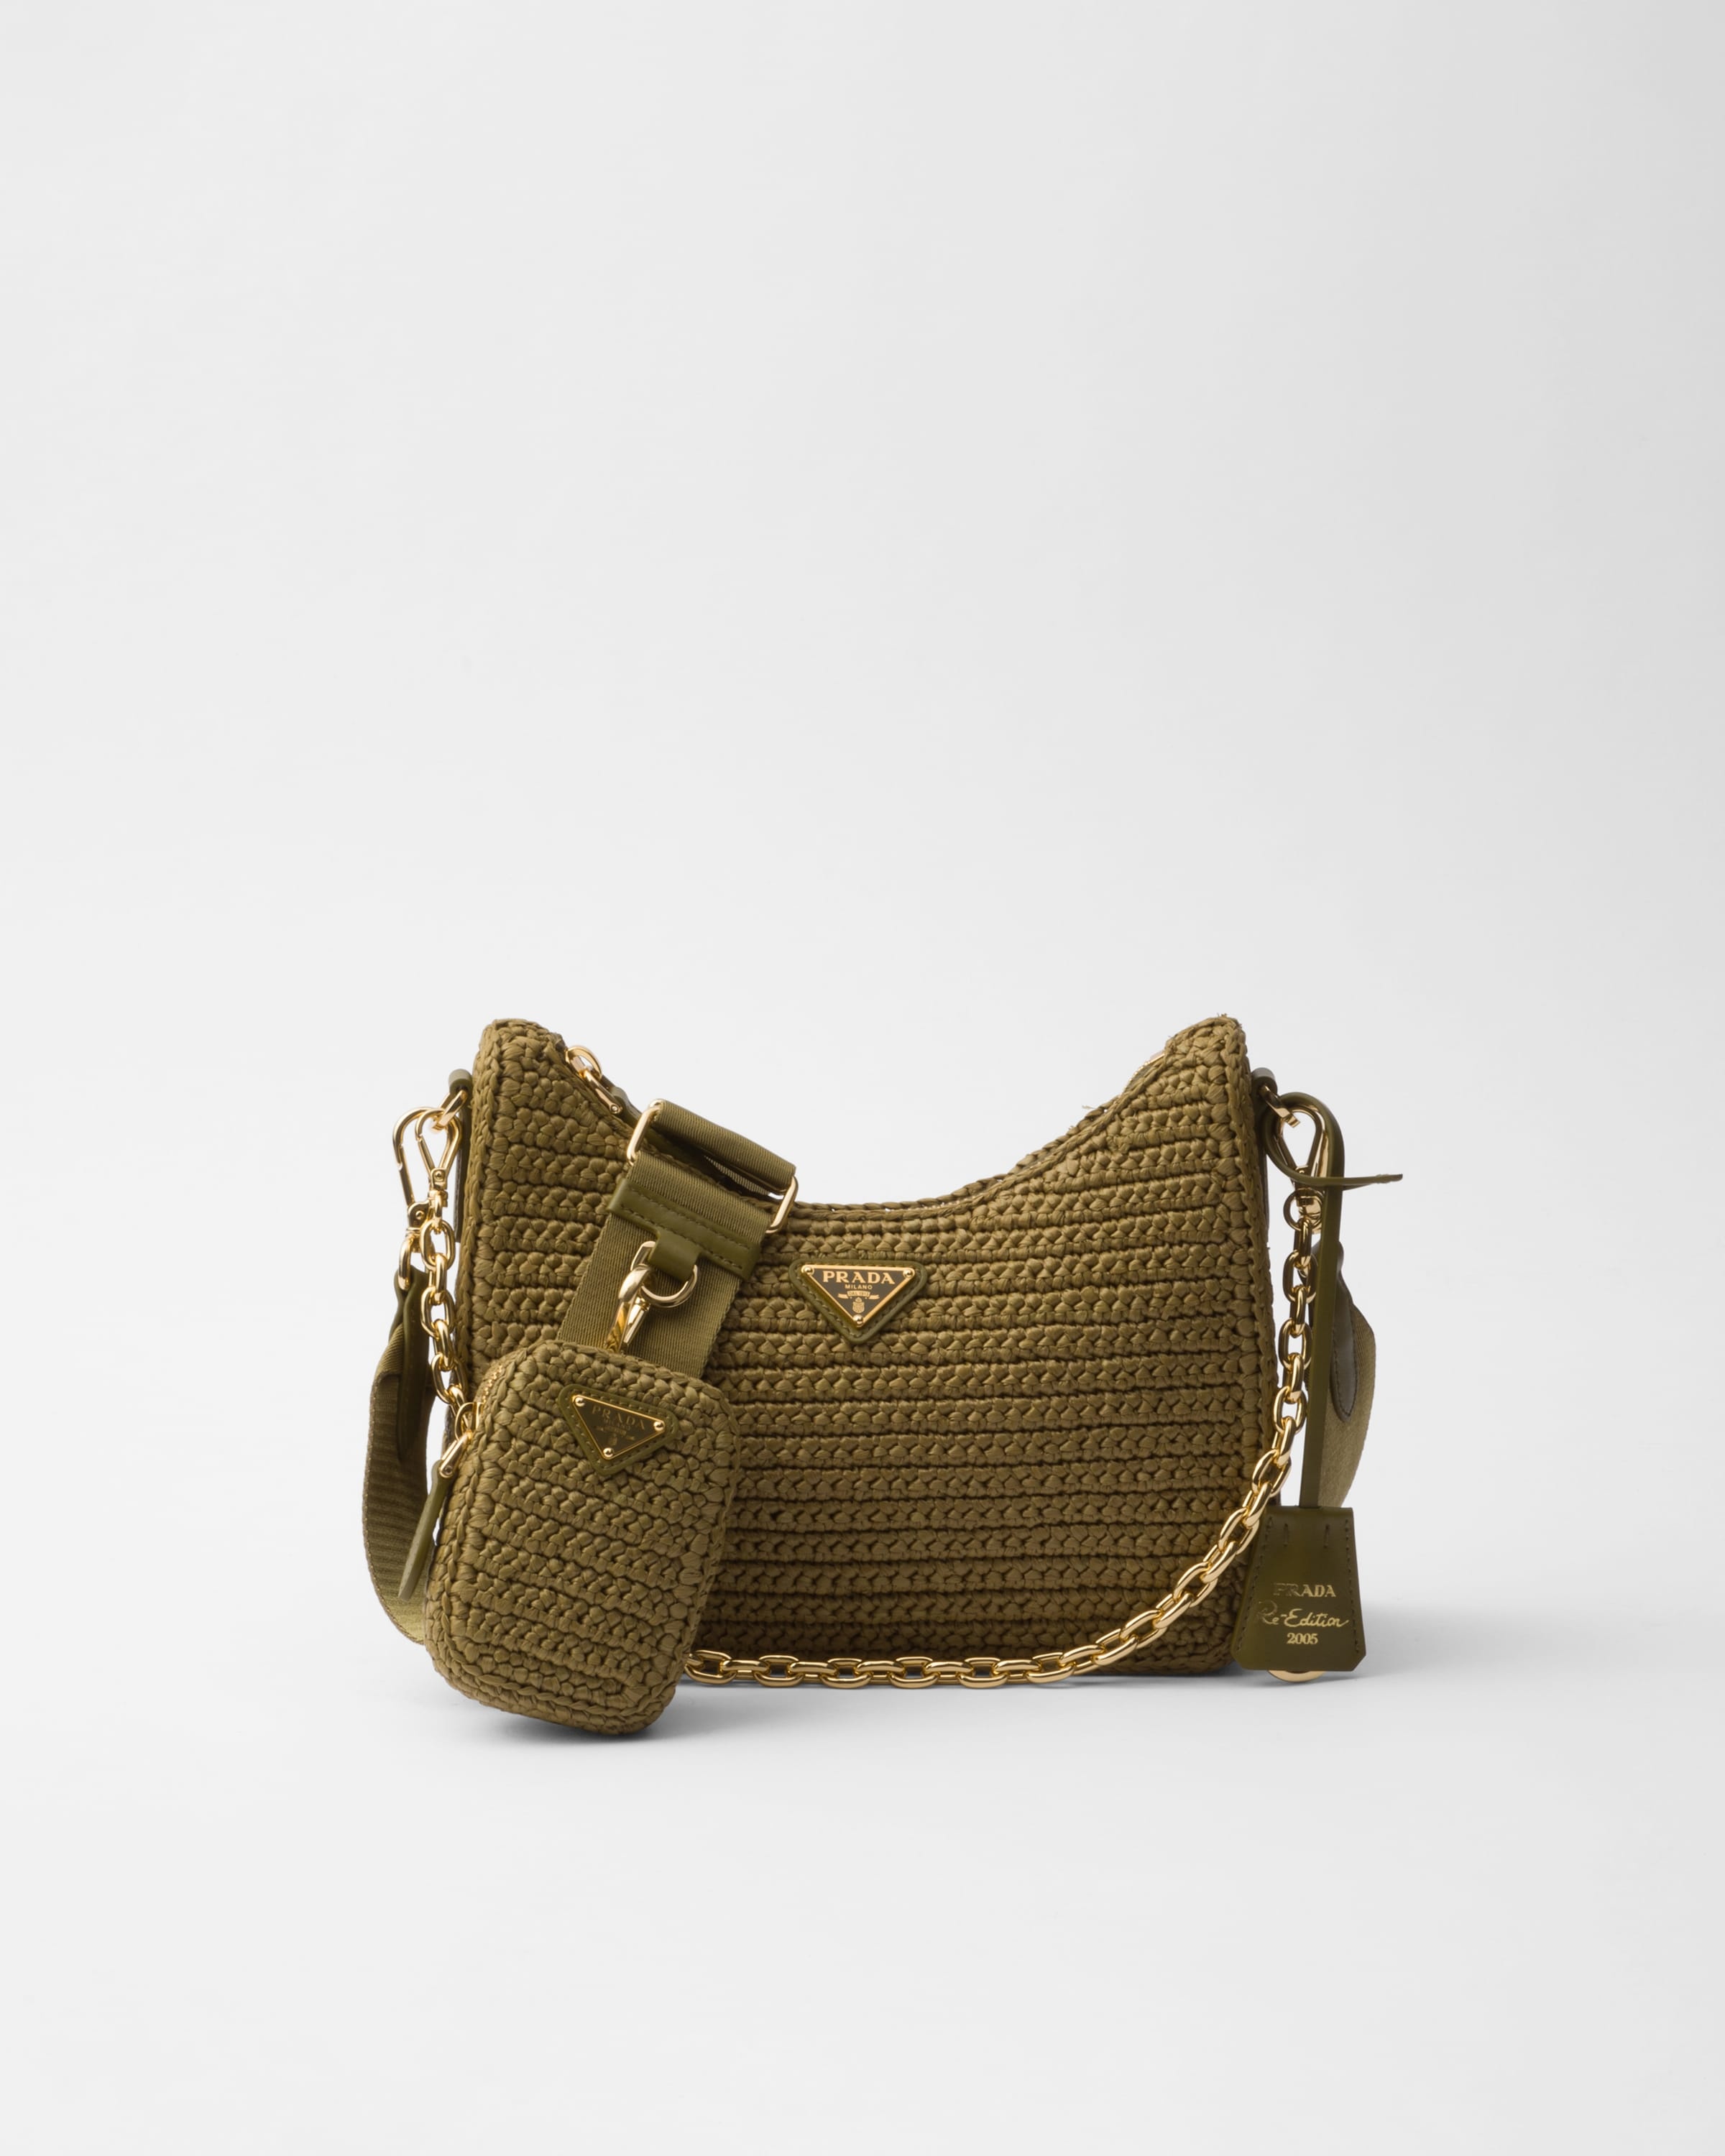 Prada Re-Edition 2005 crochet bag - 1